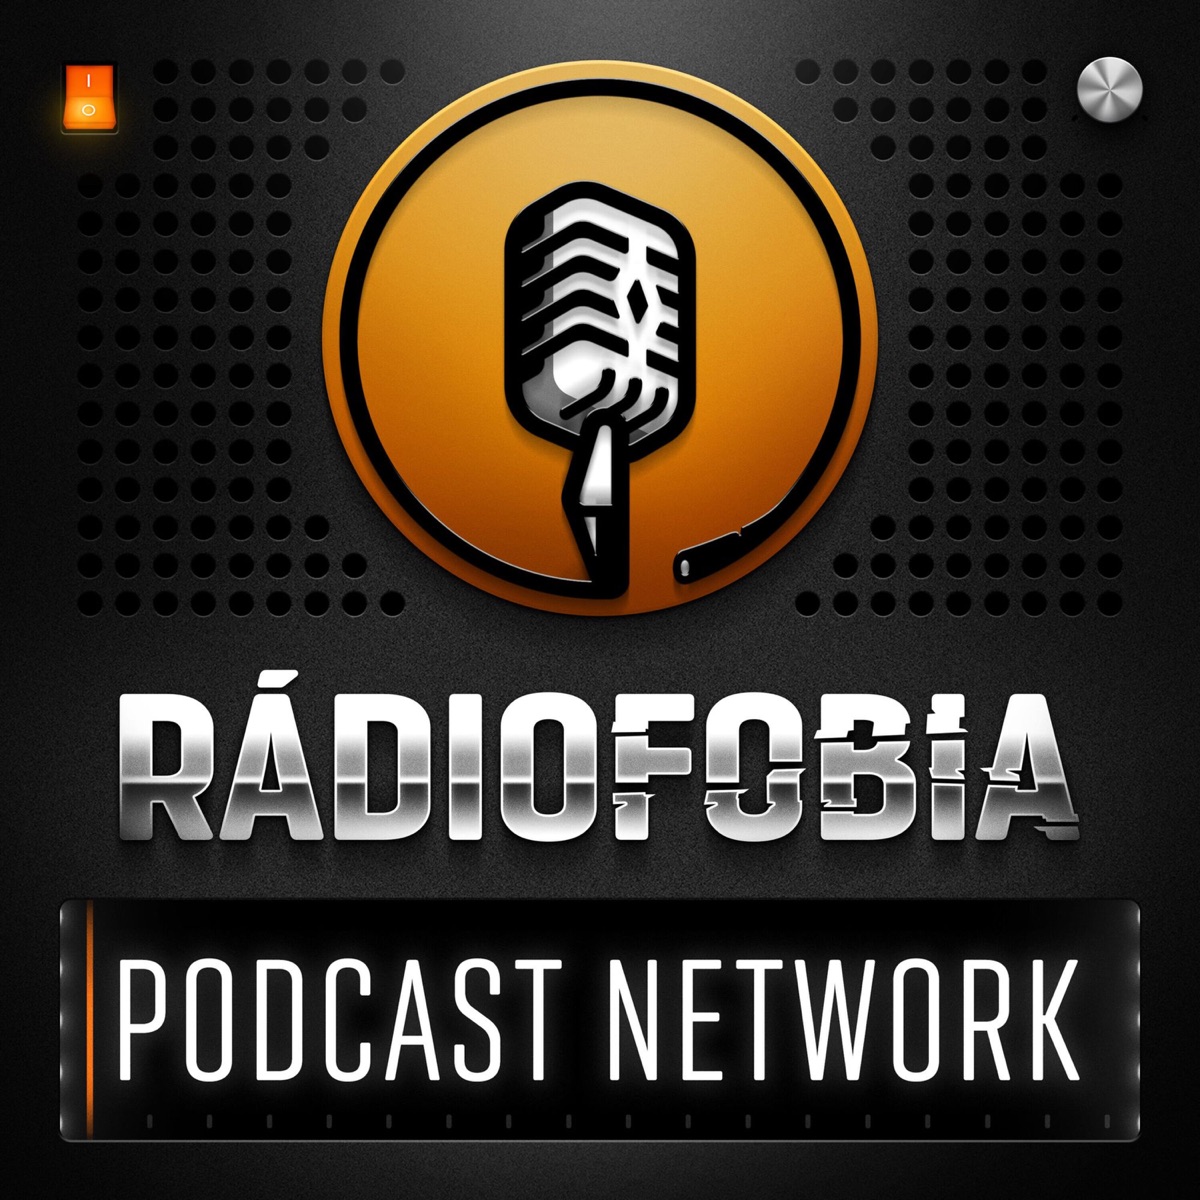 Rádiofobia Podcast Network – Podcast – Podtail